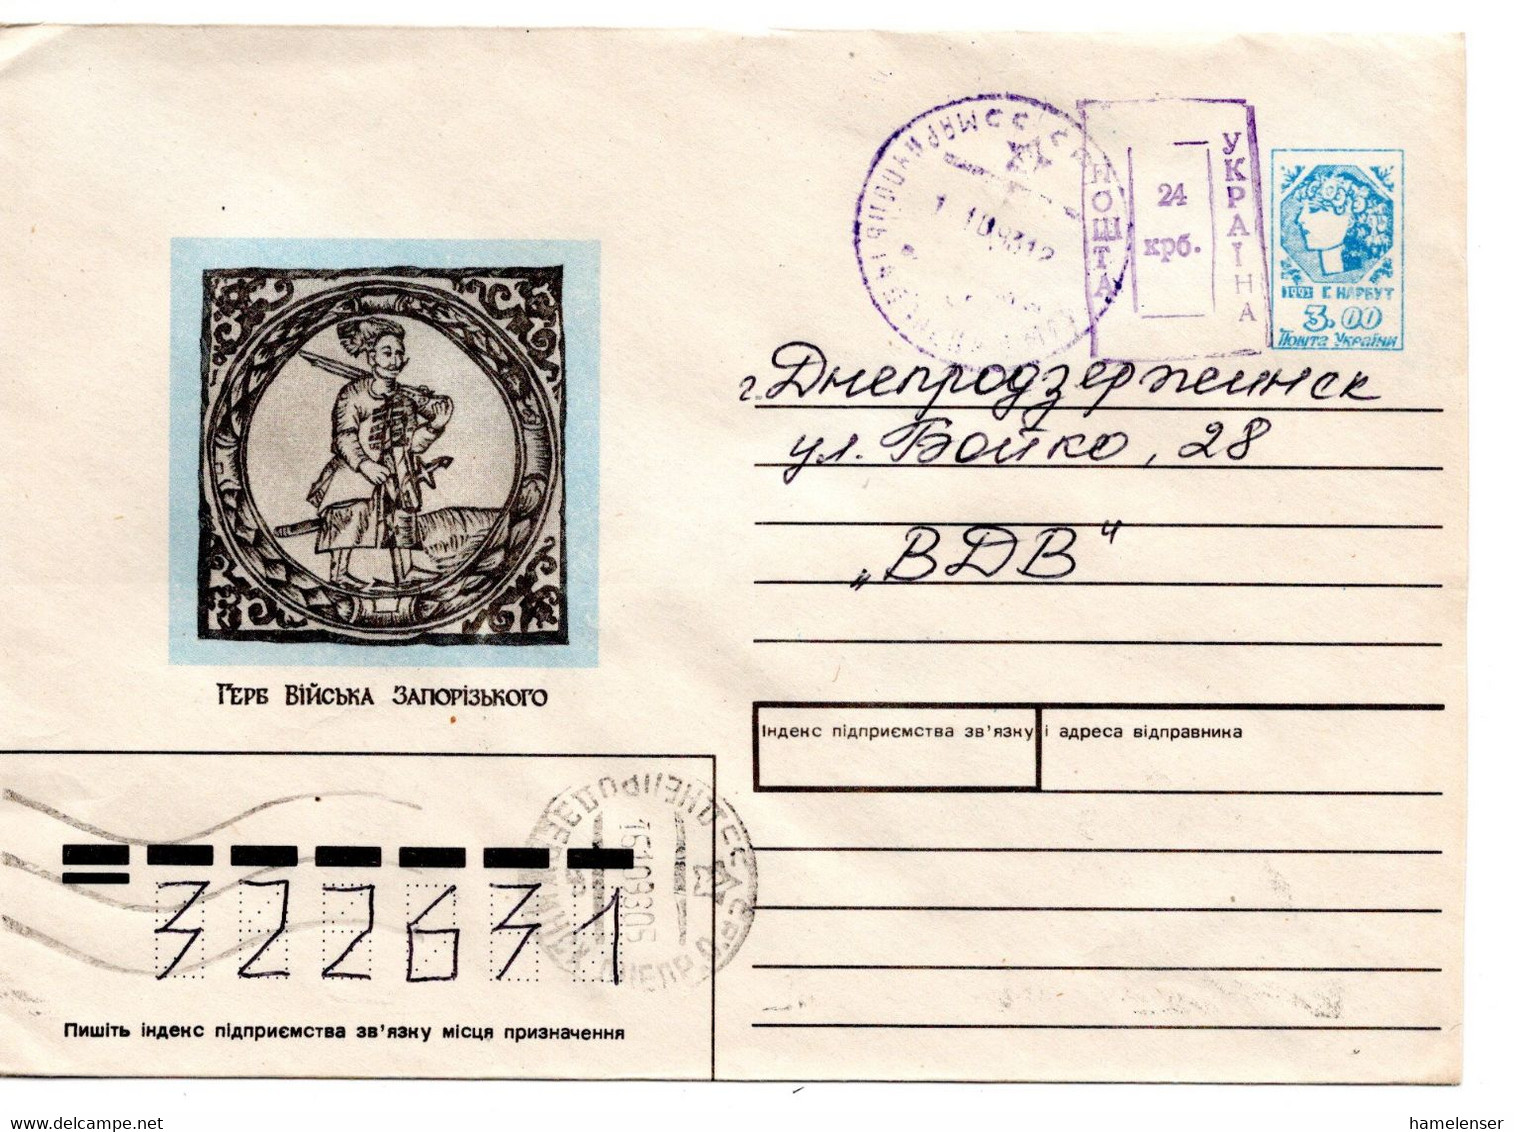 63140 - Ukraine - 1993 - 3Krb GAUmschl "Wappen" M Handstpl-Zudruck 24Krb MARIUPOL' -> DNEPRODZERZHINSK - Ukraine